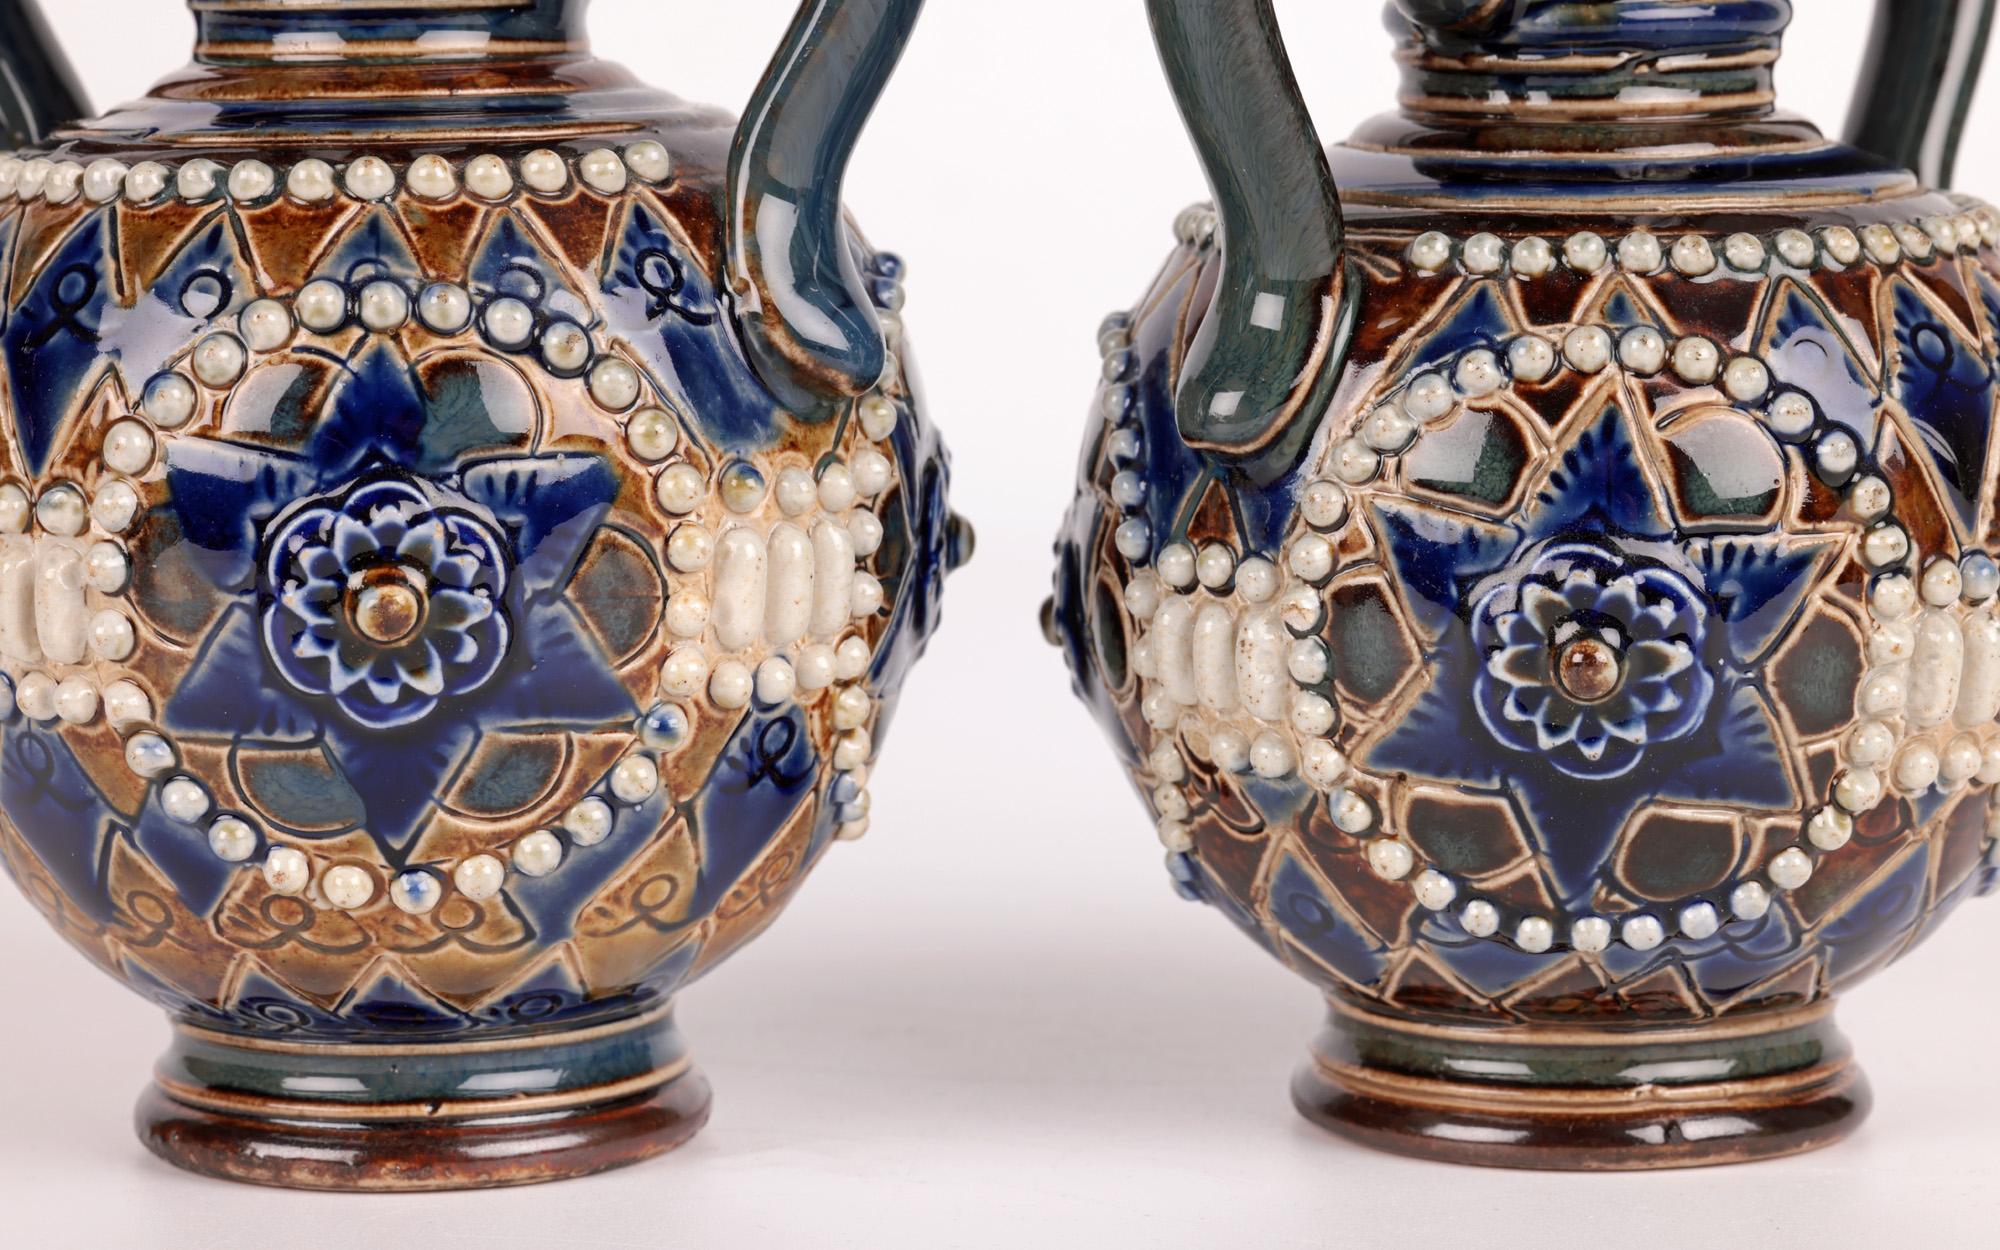 Doulton Lambeth Pair Art Nouveau Vases by Ethel Beard & Florrie Jones For Sale 5